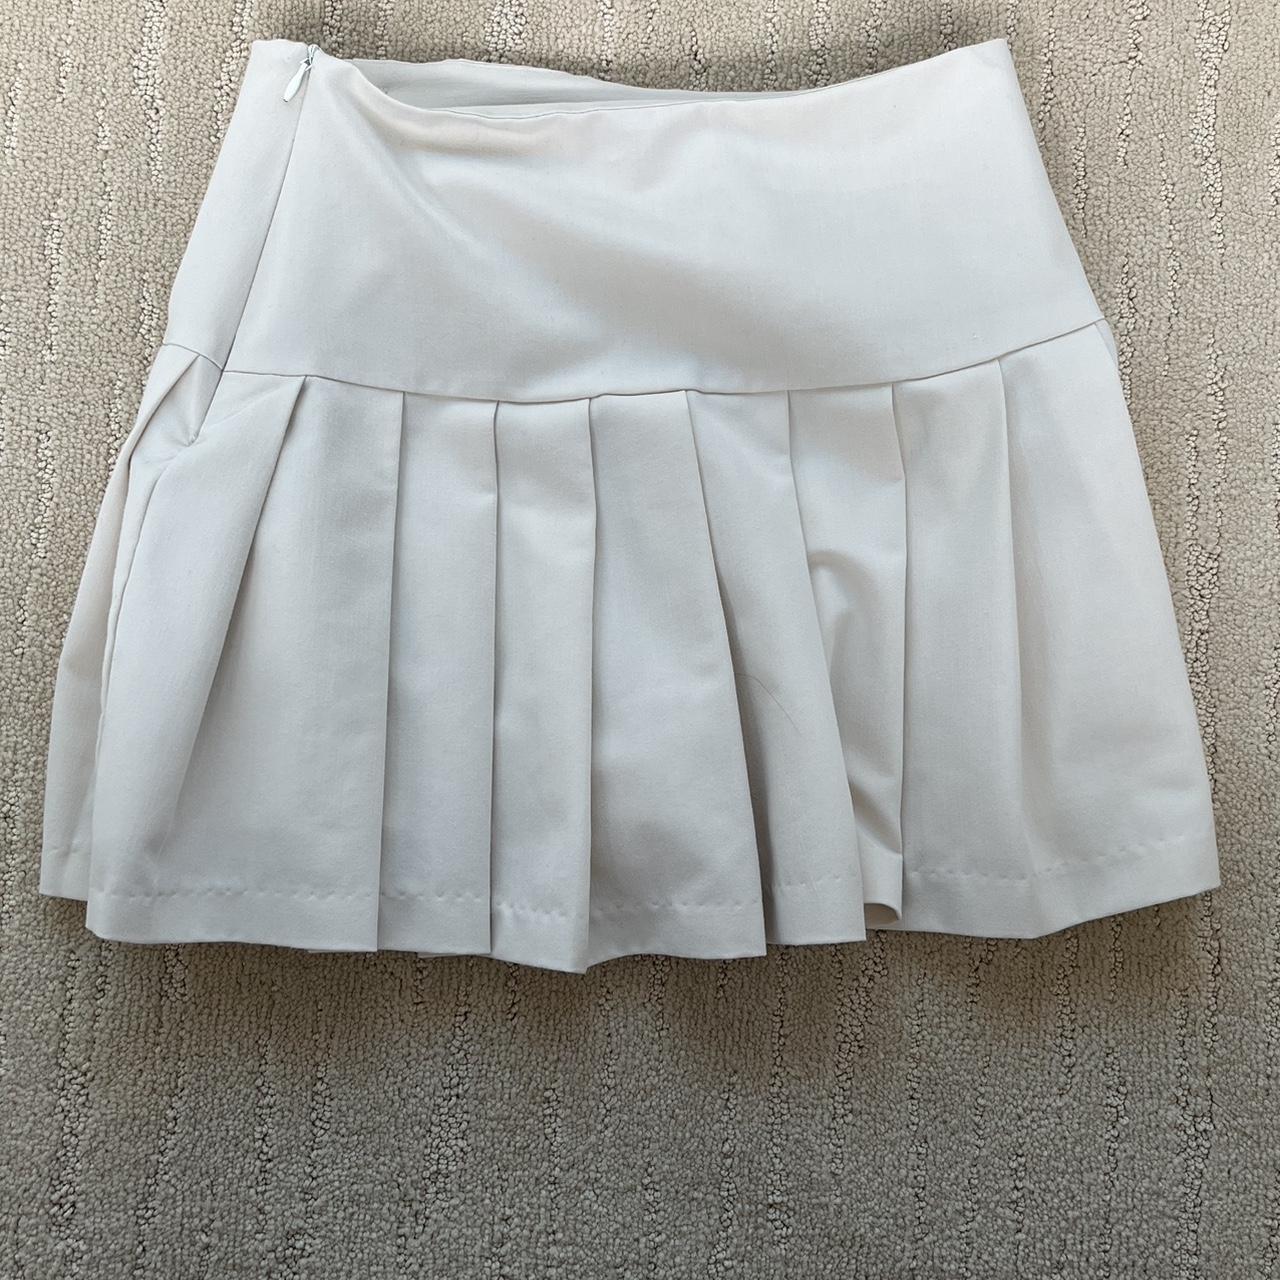 Stylenanda Women's Cream and White Skirt (3)